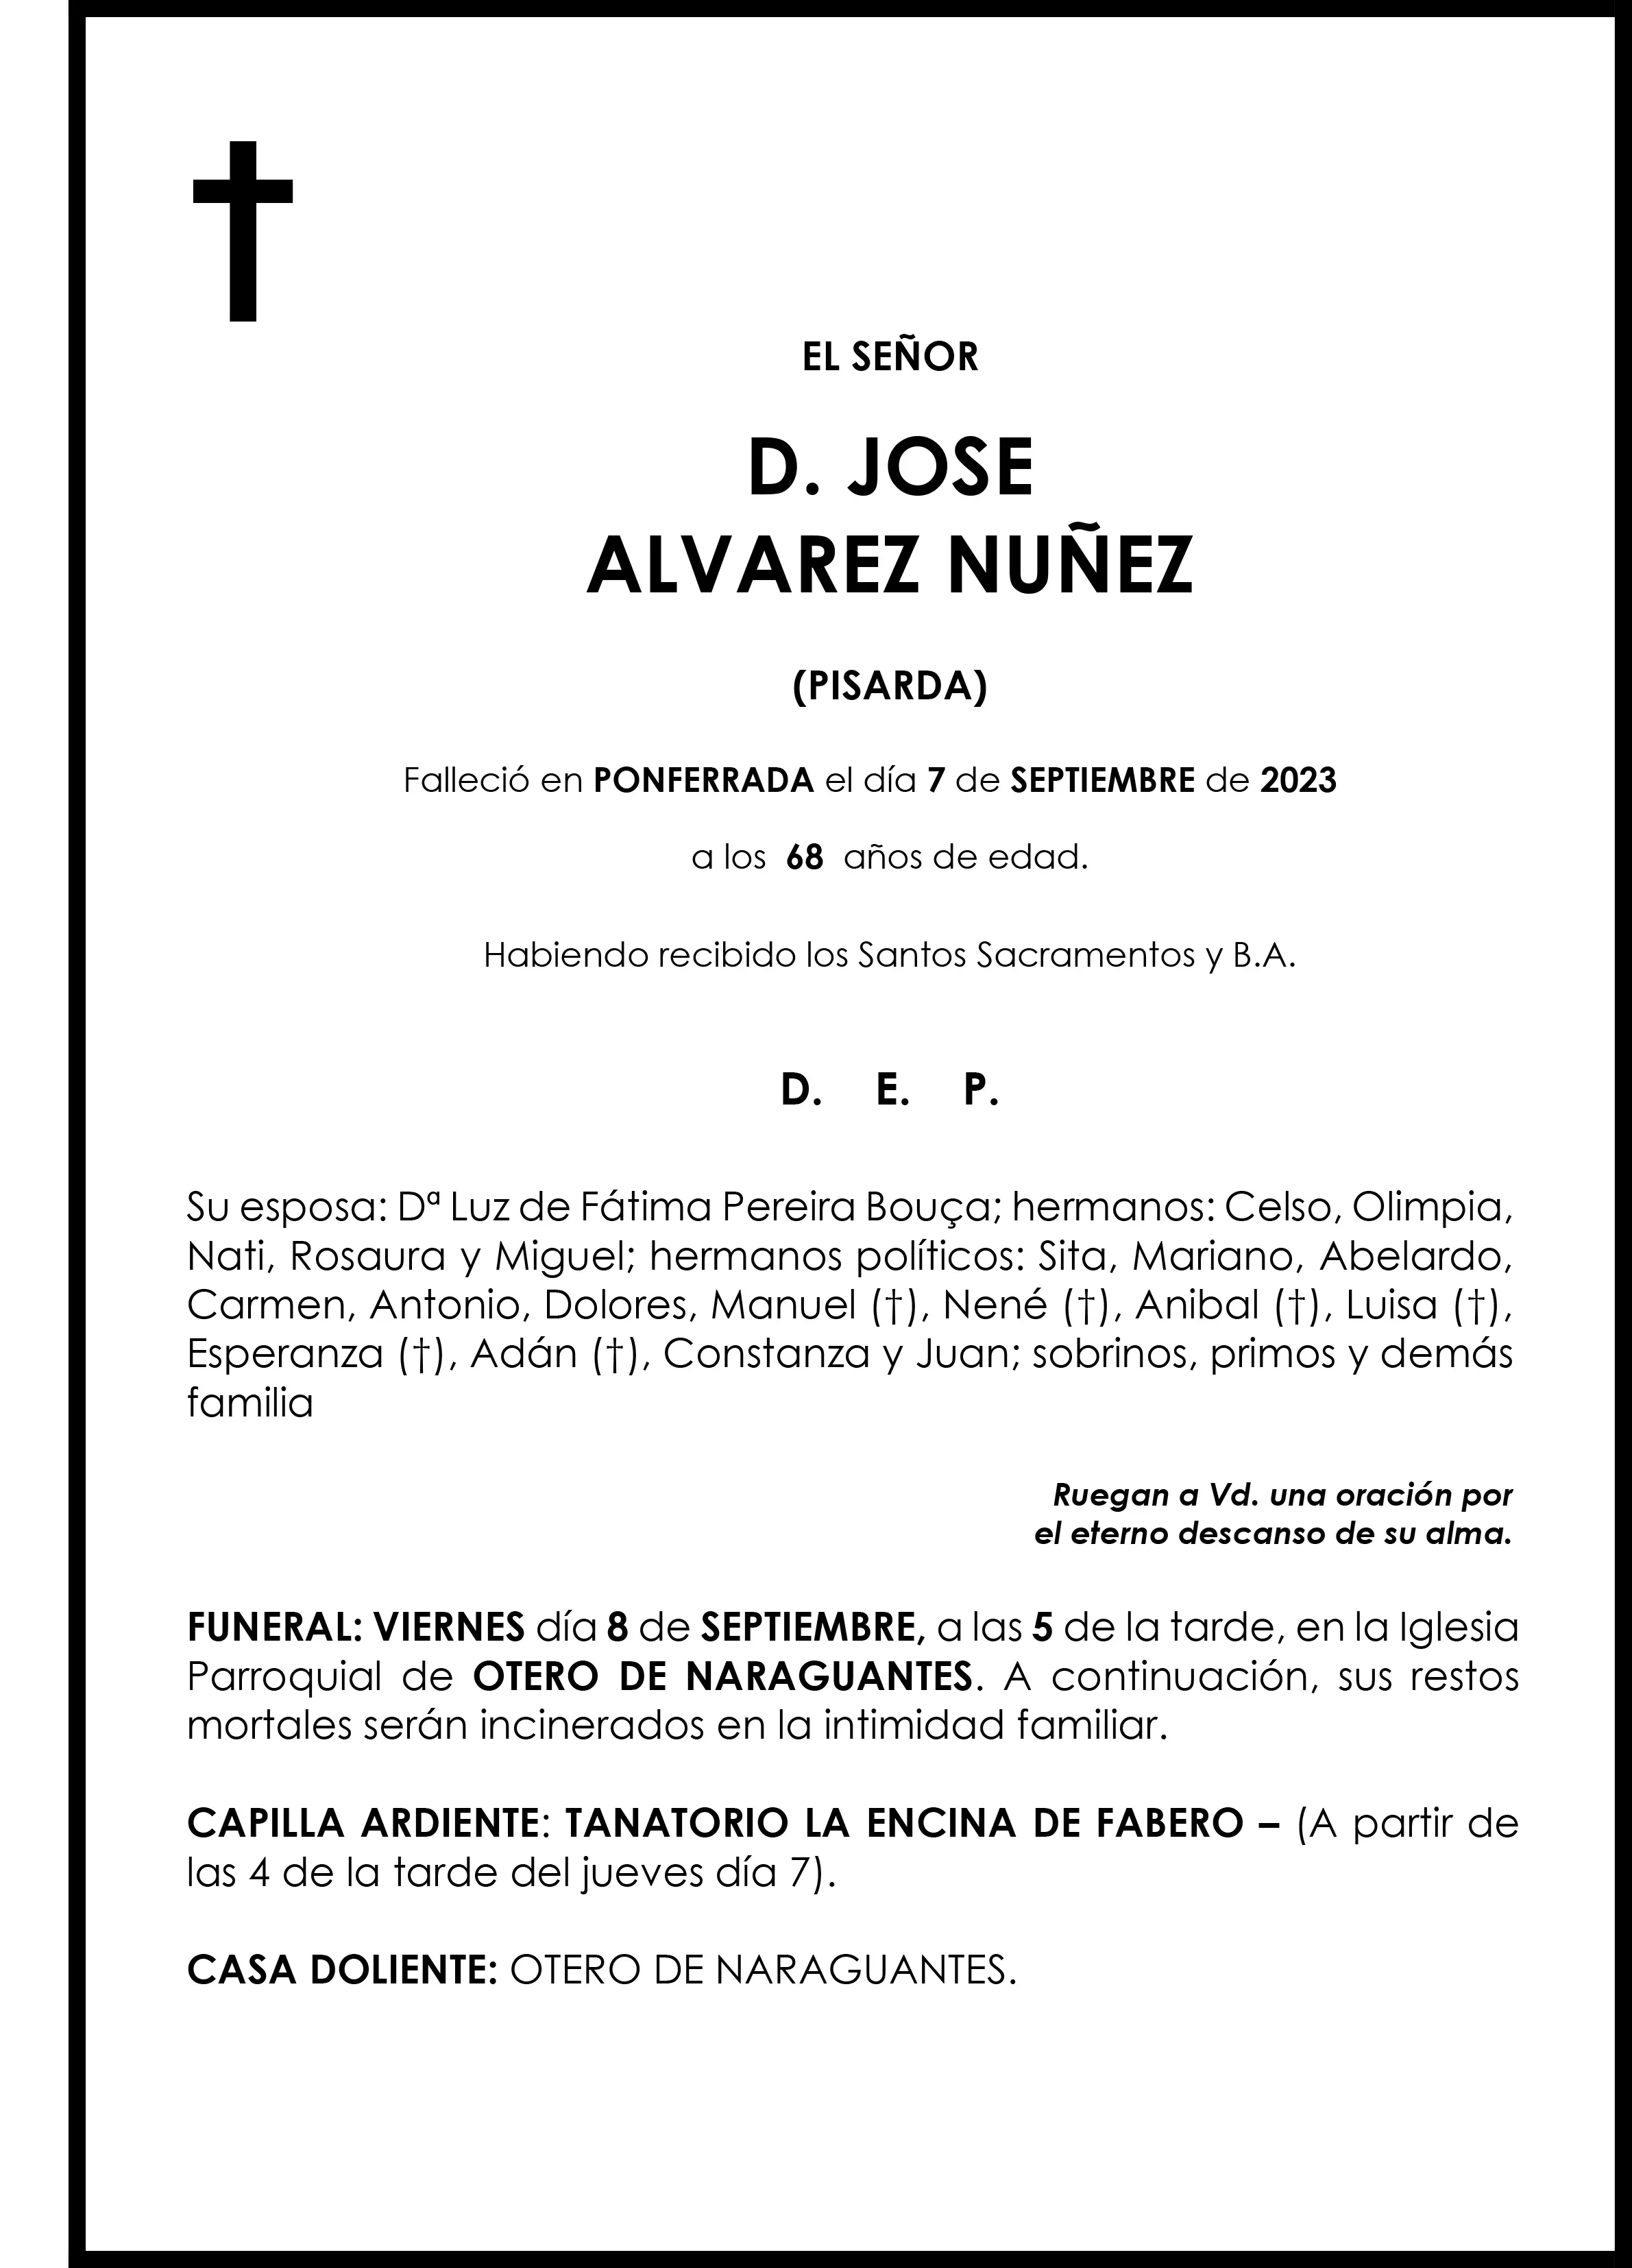 JOSE ALVAREZ NUÑEZ